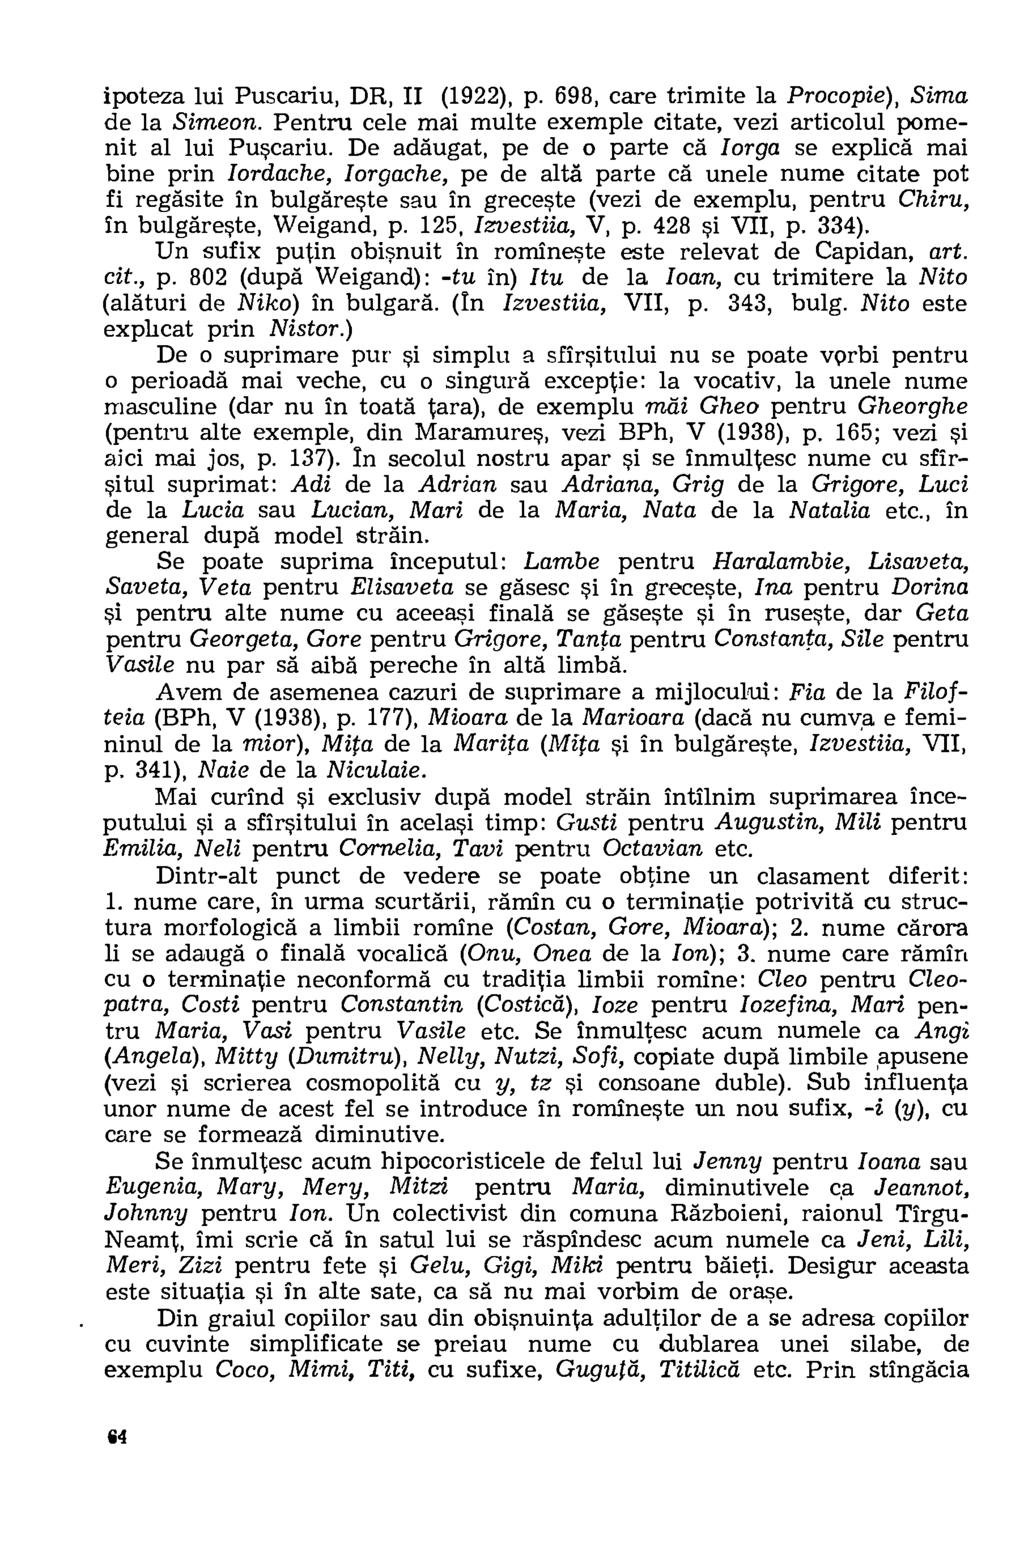 ipoteza lui Puscariu, DR, II (1922), p. 698, care trimite la Procopie), Sima de la Simeon. Pentru cele mai multe exemple citate, vezi articolul pomenit al lui Puscariu.